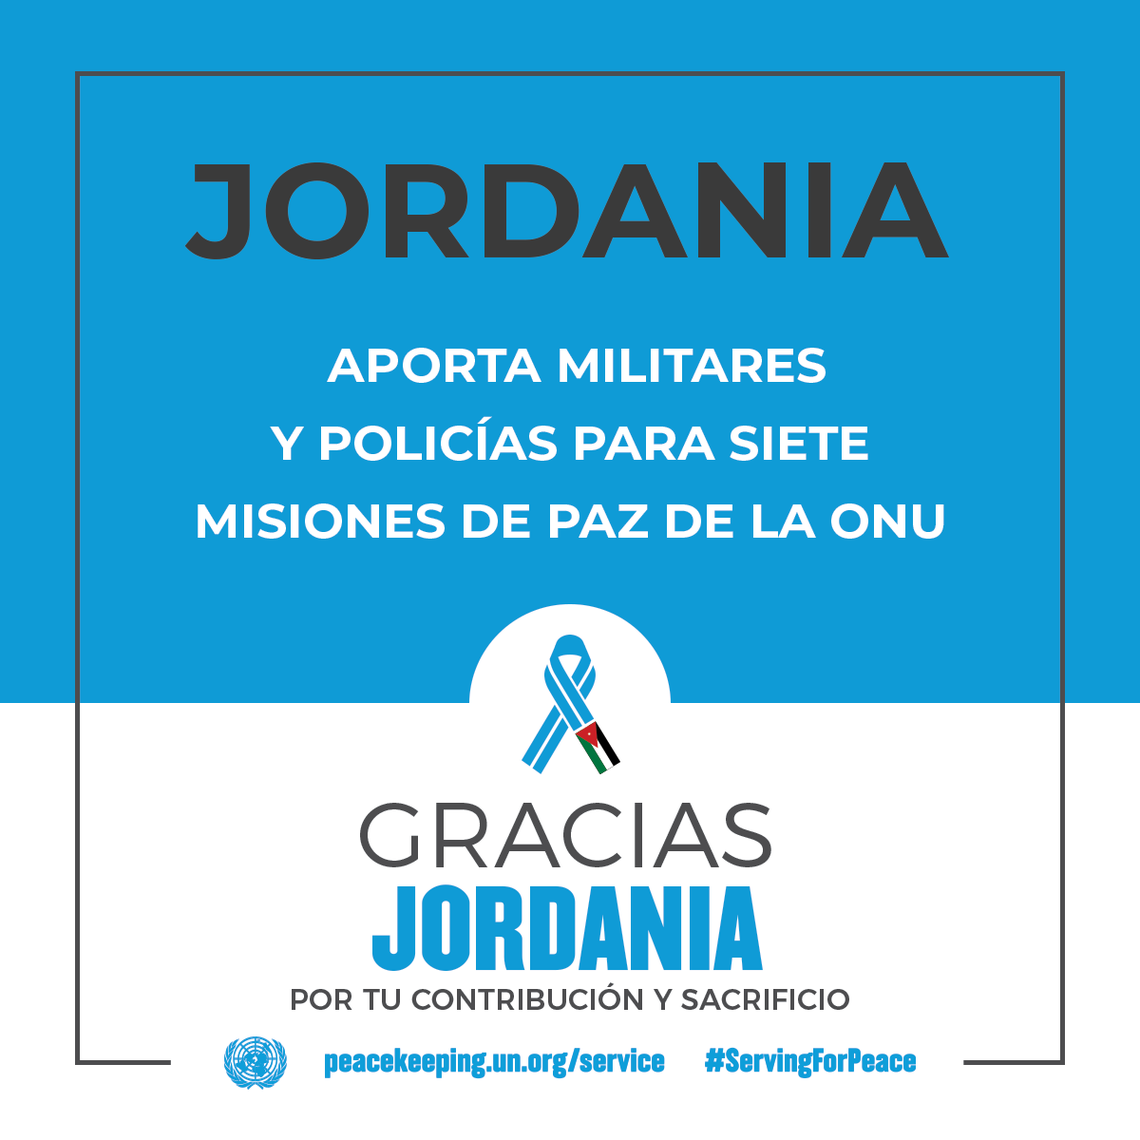 Jordania aporta militares y policías para siete Misiones de Paz de la ONU